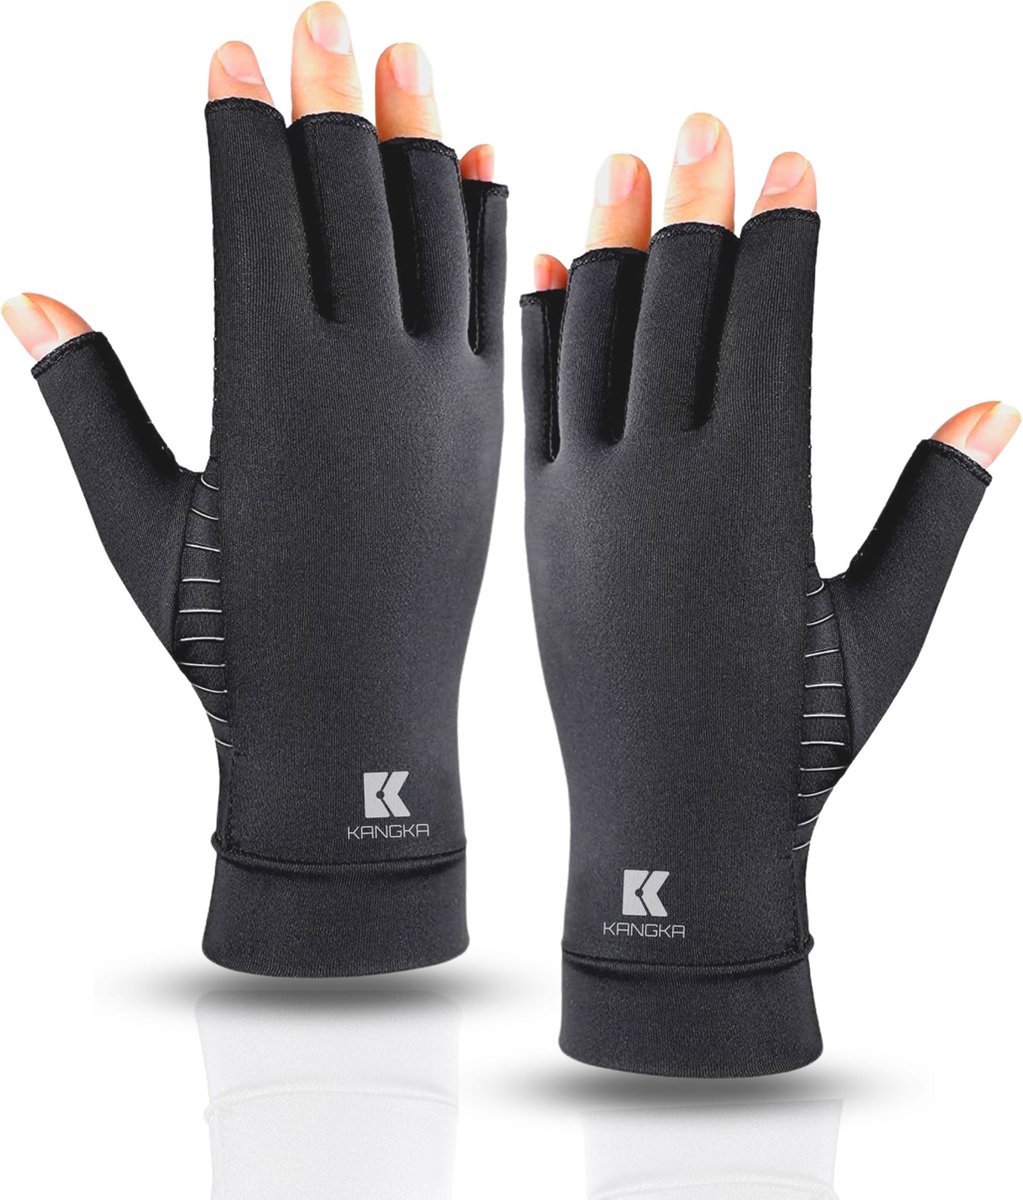 KANGKA® Reuma Compressie Handschoenen - Open vingertoppen voor Bewegingsvrijheid - Verlichting van Artritis en Reumatische Pijn - Zwart - Maat S